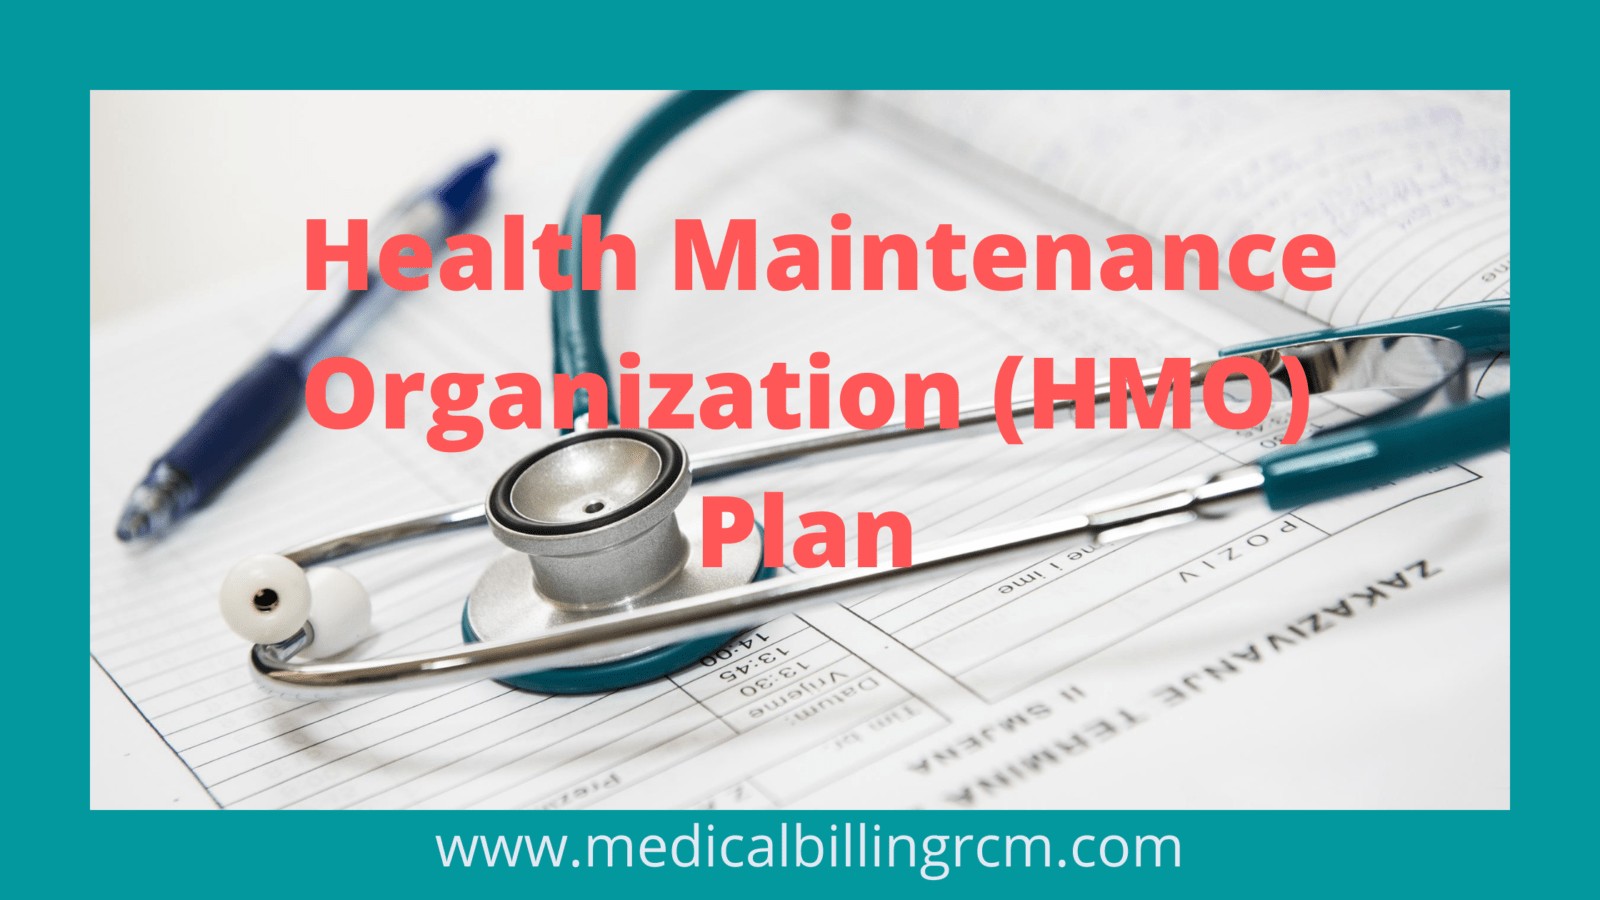 HMO plans in medical billing